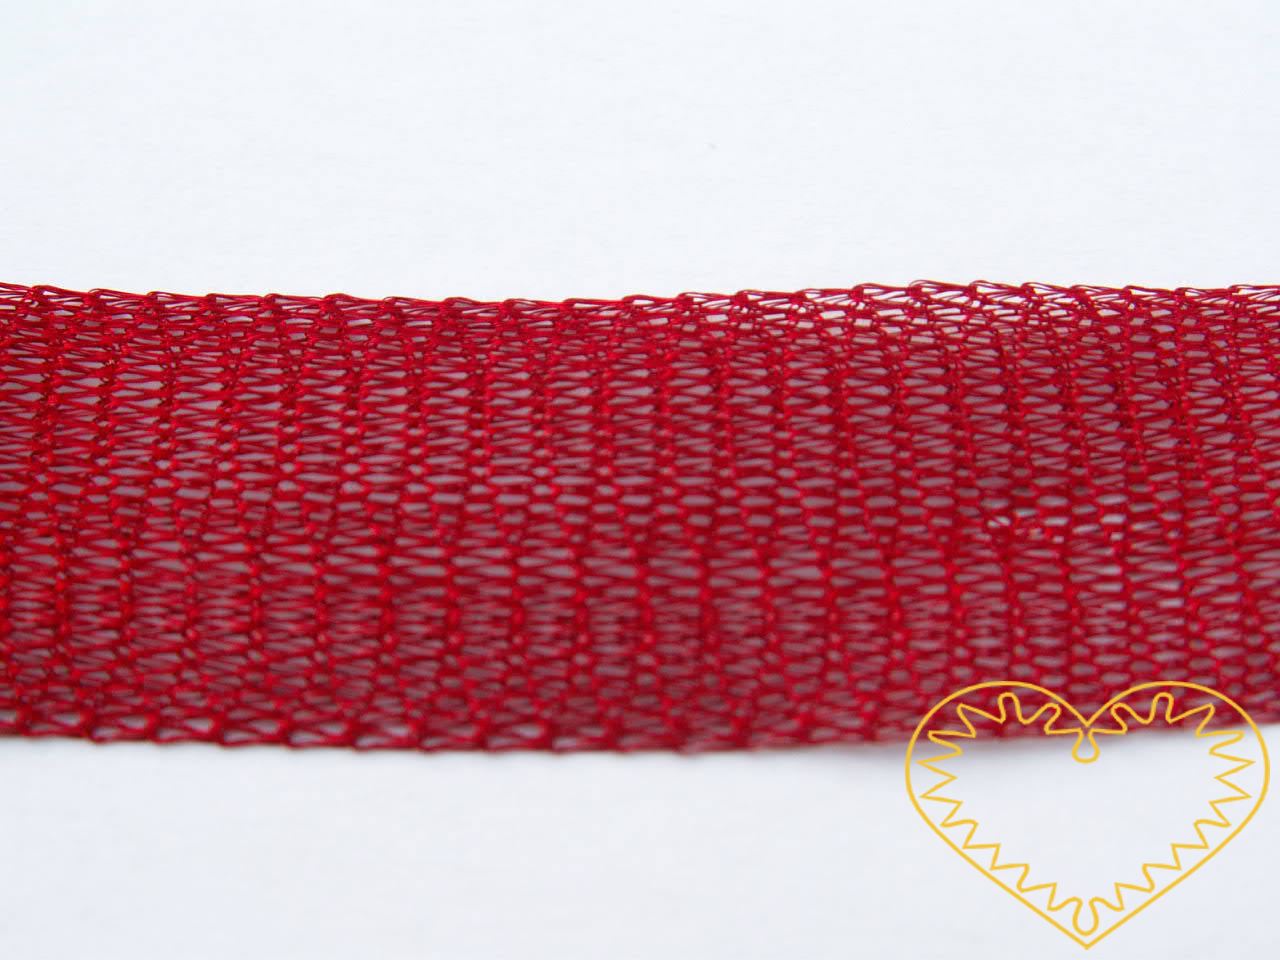 Širší bižuterní drátěný pásek - růžový. Výborný a netradiční materiál pro výrobu originálních šperků. Jedná se vlastně o drátěný pletený tunel. Lze jej použít buď jako pásek (stužku, obojek) a zavěšovat na něj korálky a další přízdoby či jej různ